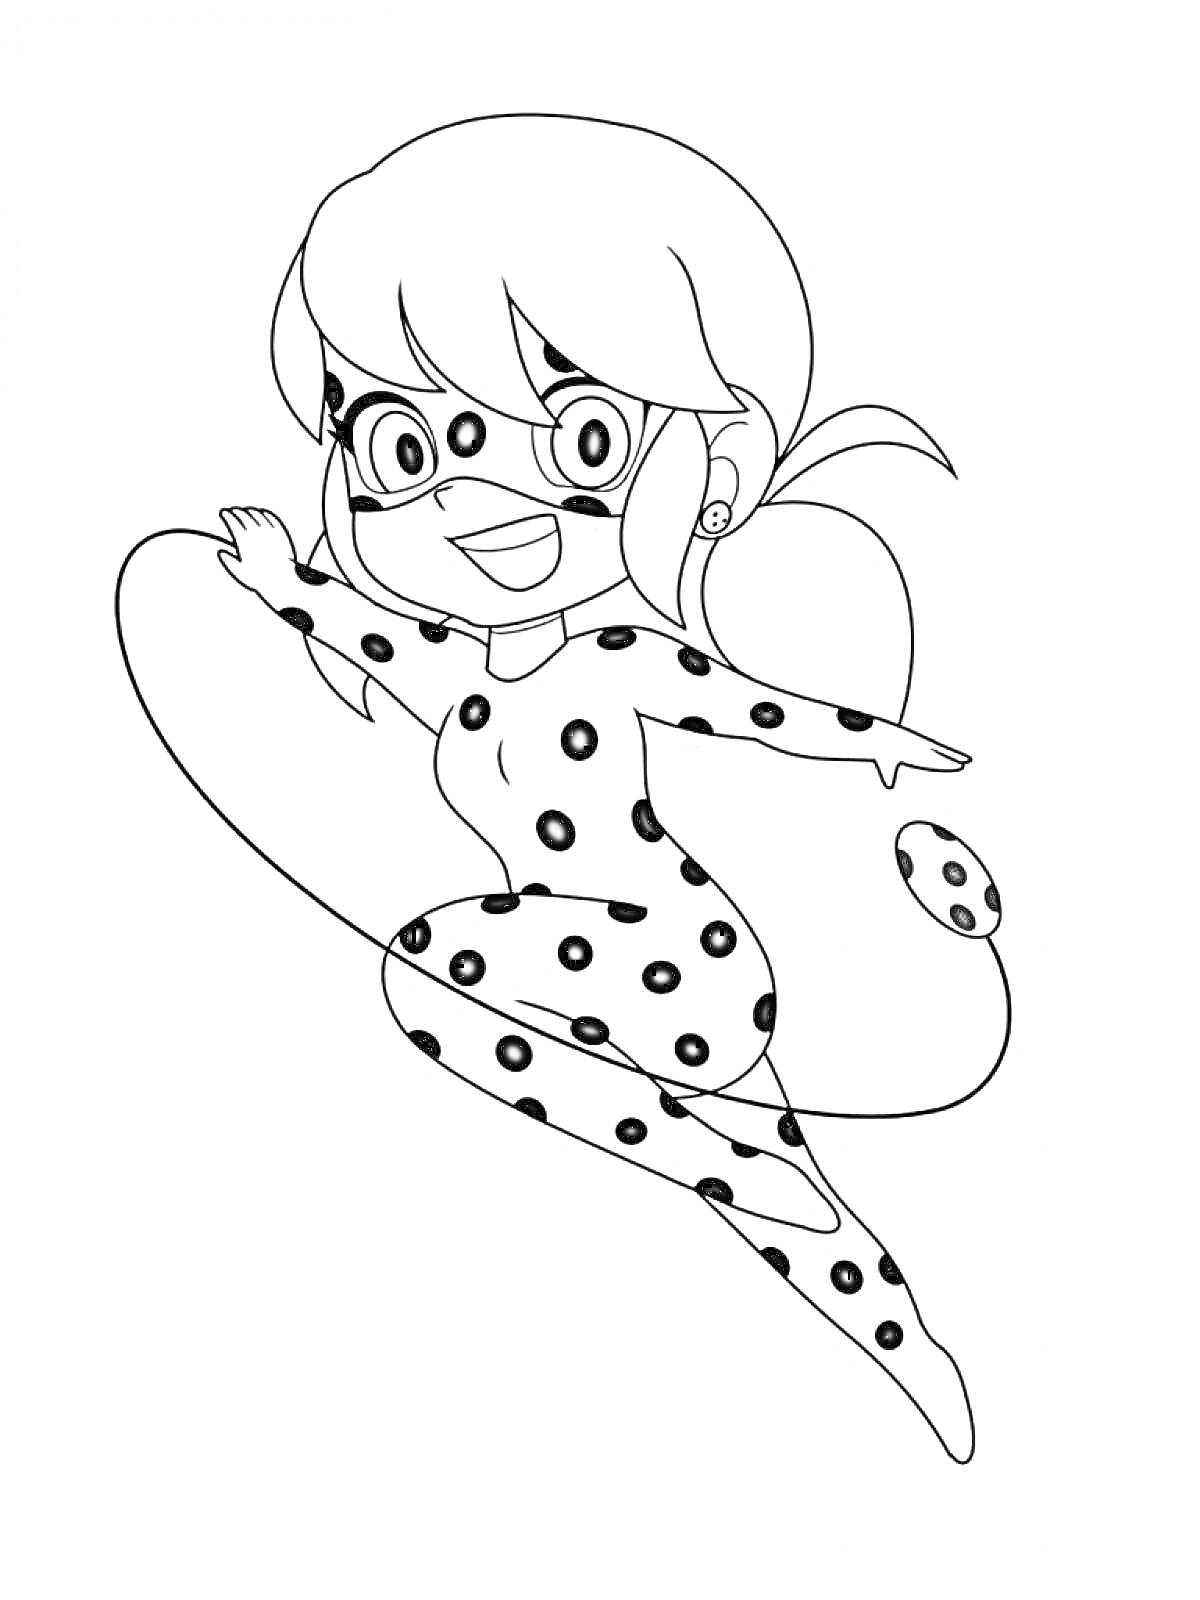 Раскраска Леди Баг в прыжке с поднятой рукой в костюме с точками